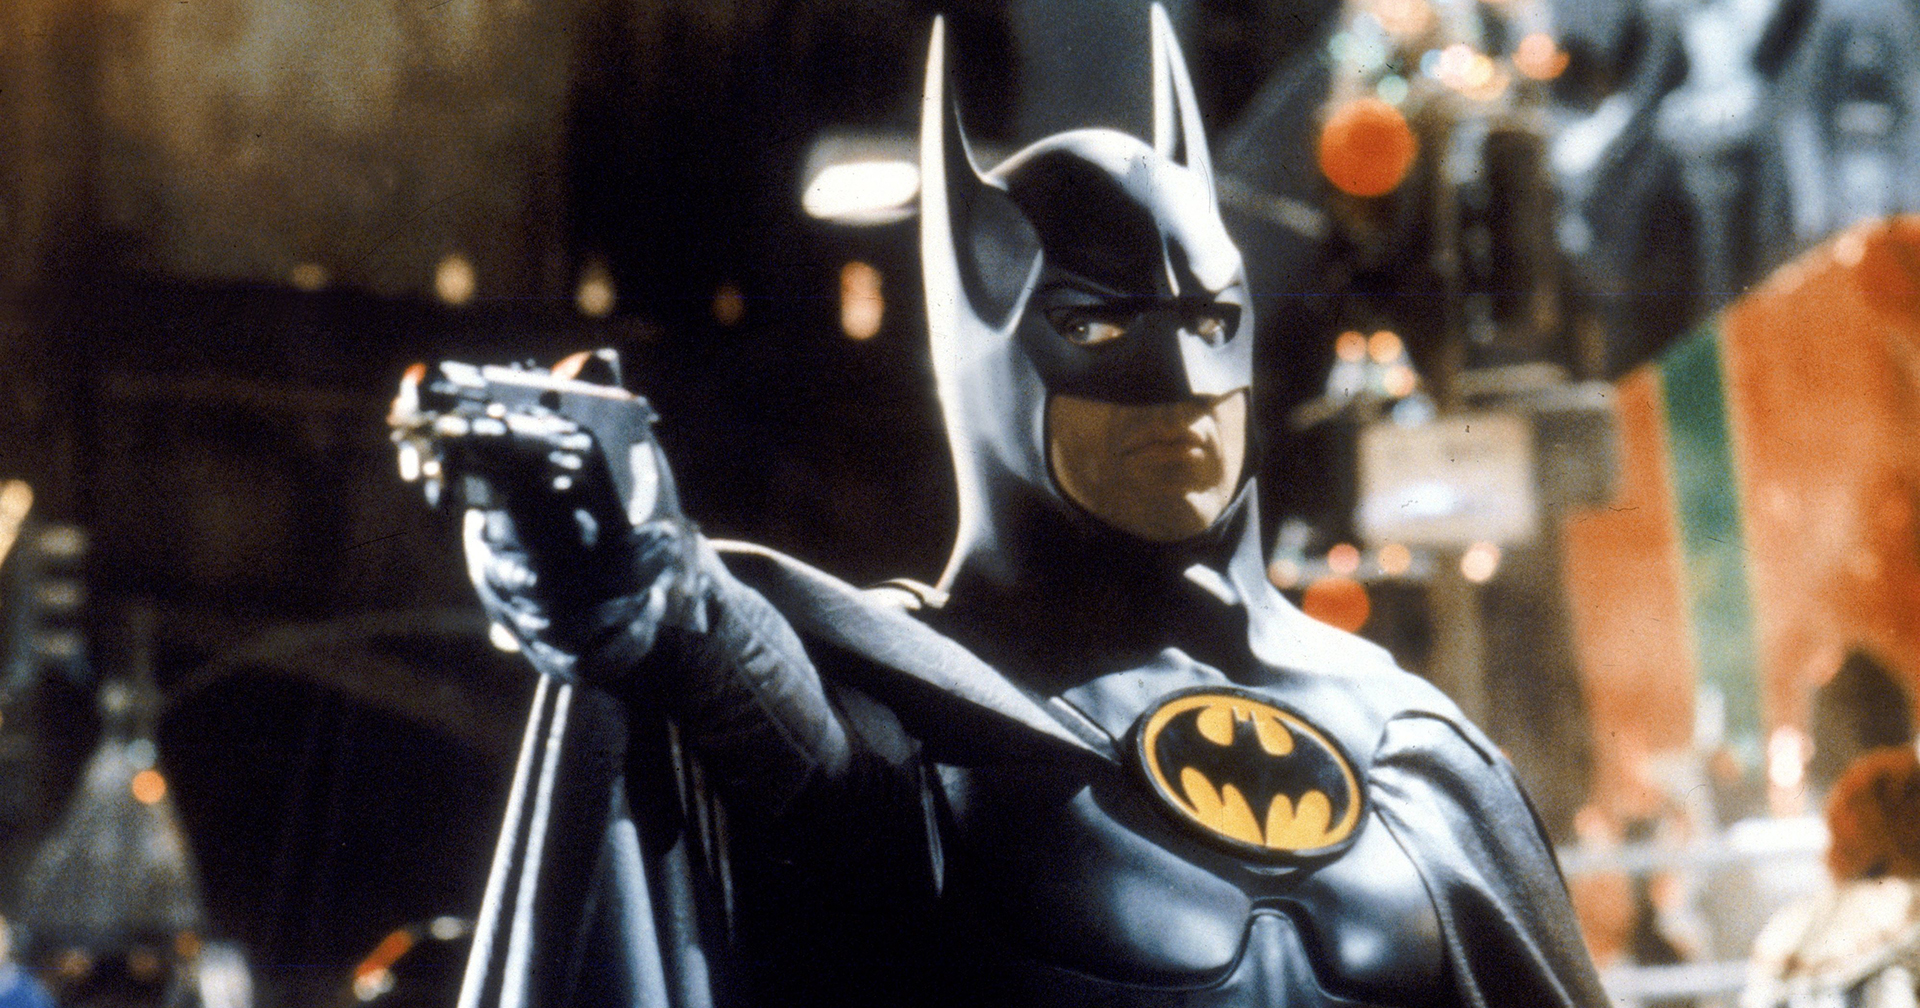 ไมเคิล คีตัน จะยังคงรับบท Batman ต่อไปในภาพยนตร์ Batgirl